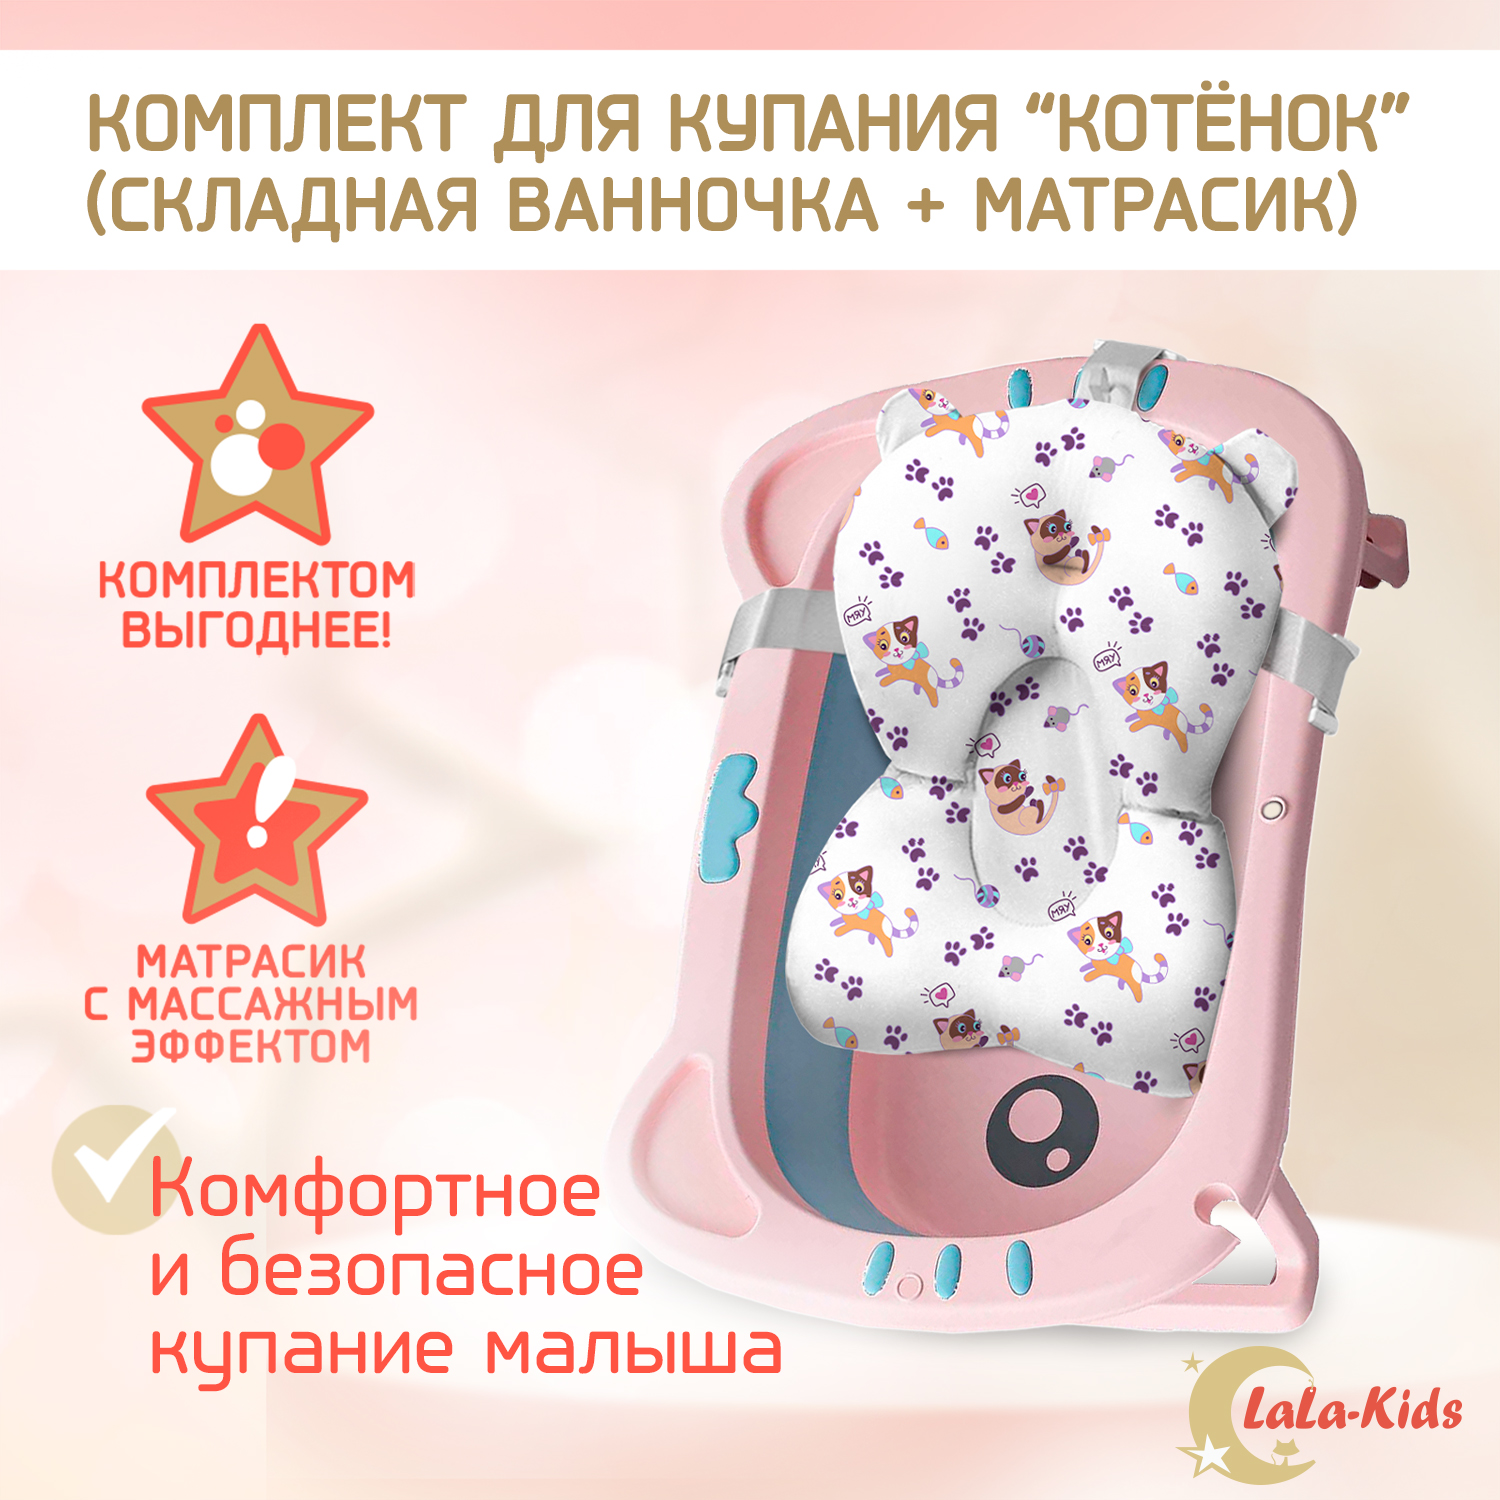 Ванночка для новорожденных LaLa-Kids складная с матрасиком светло-лиловым в комплекте - фото 2